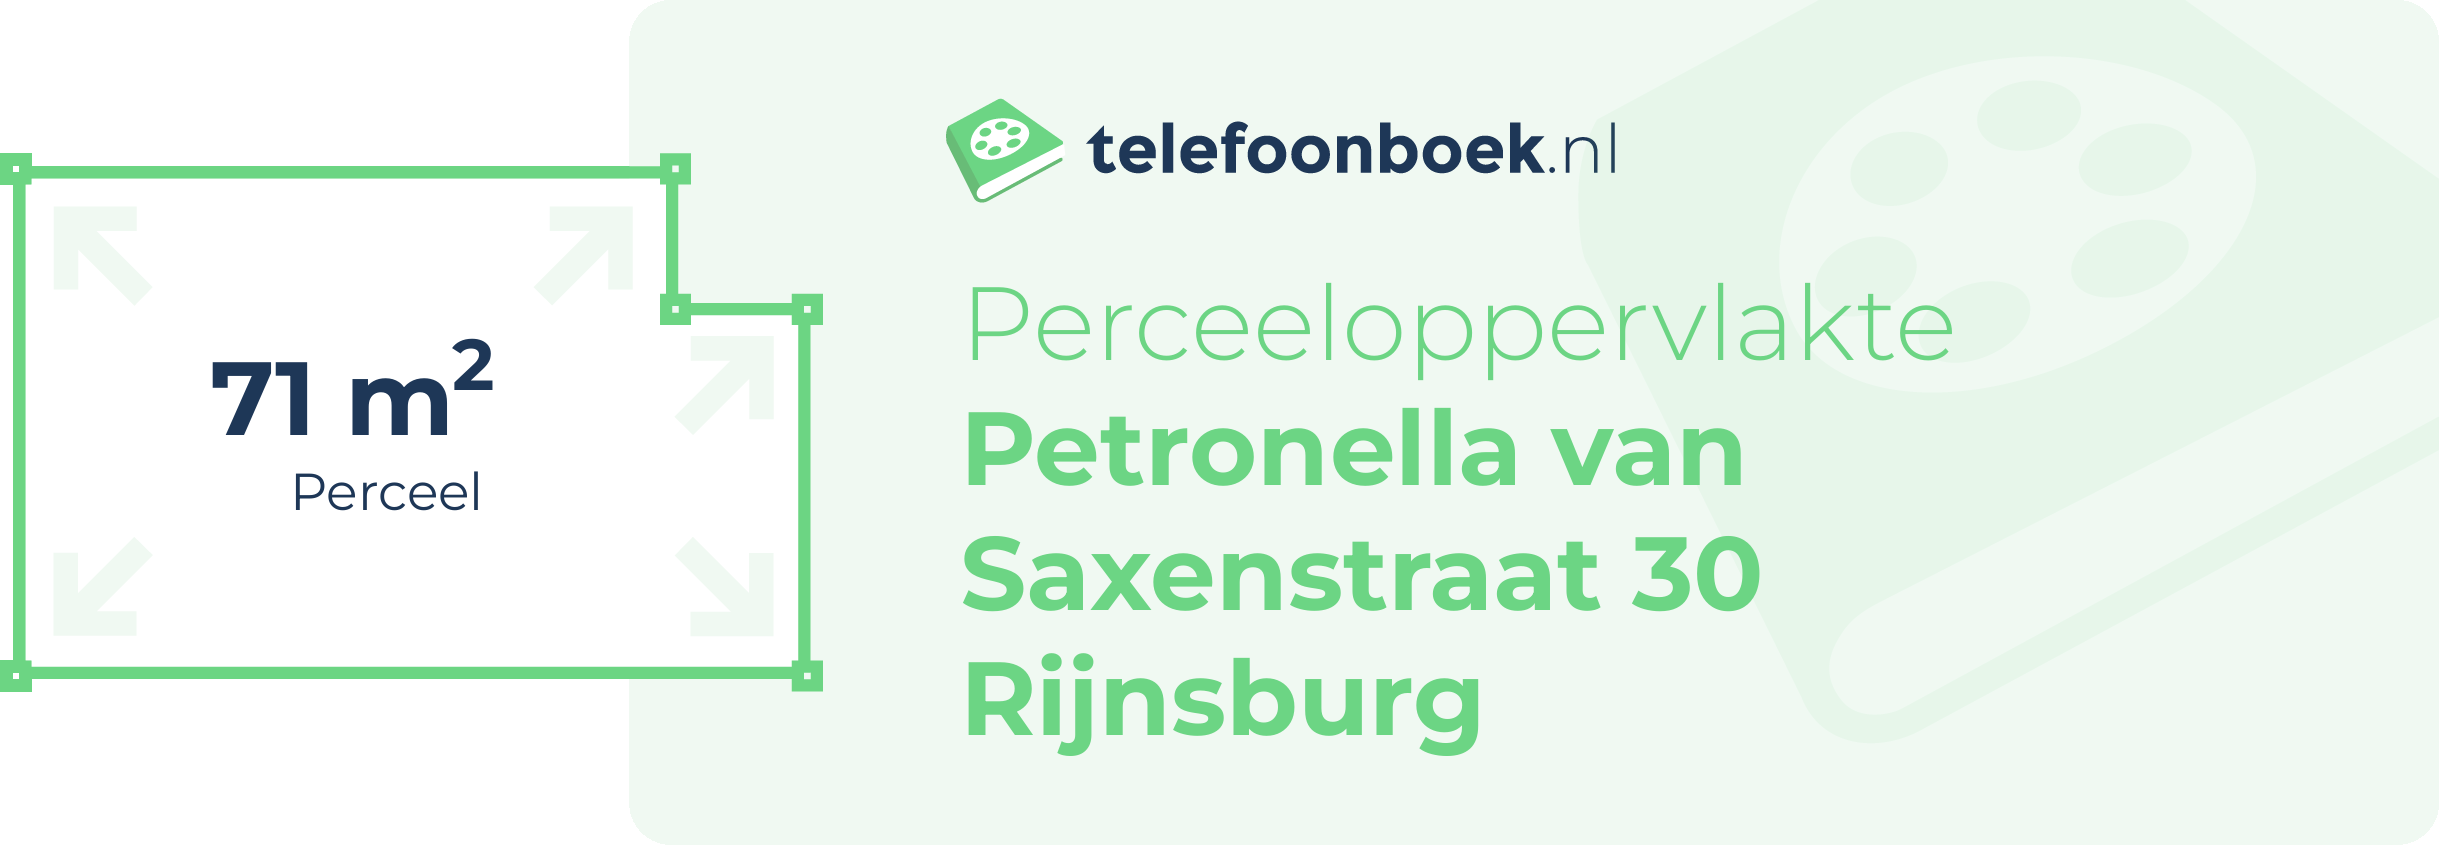 Perceeloppervlakte Petronella Van Saxenstraat 30 Rijnsburg